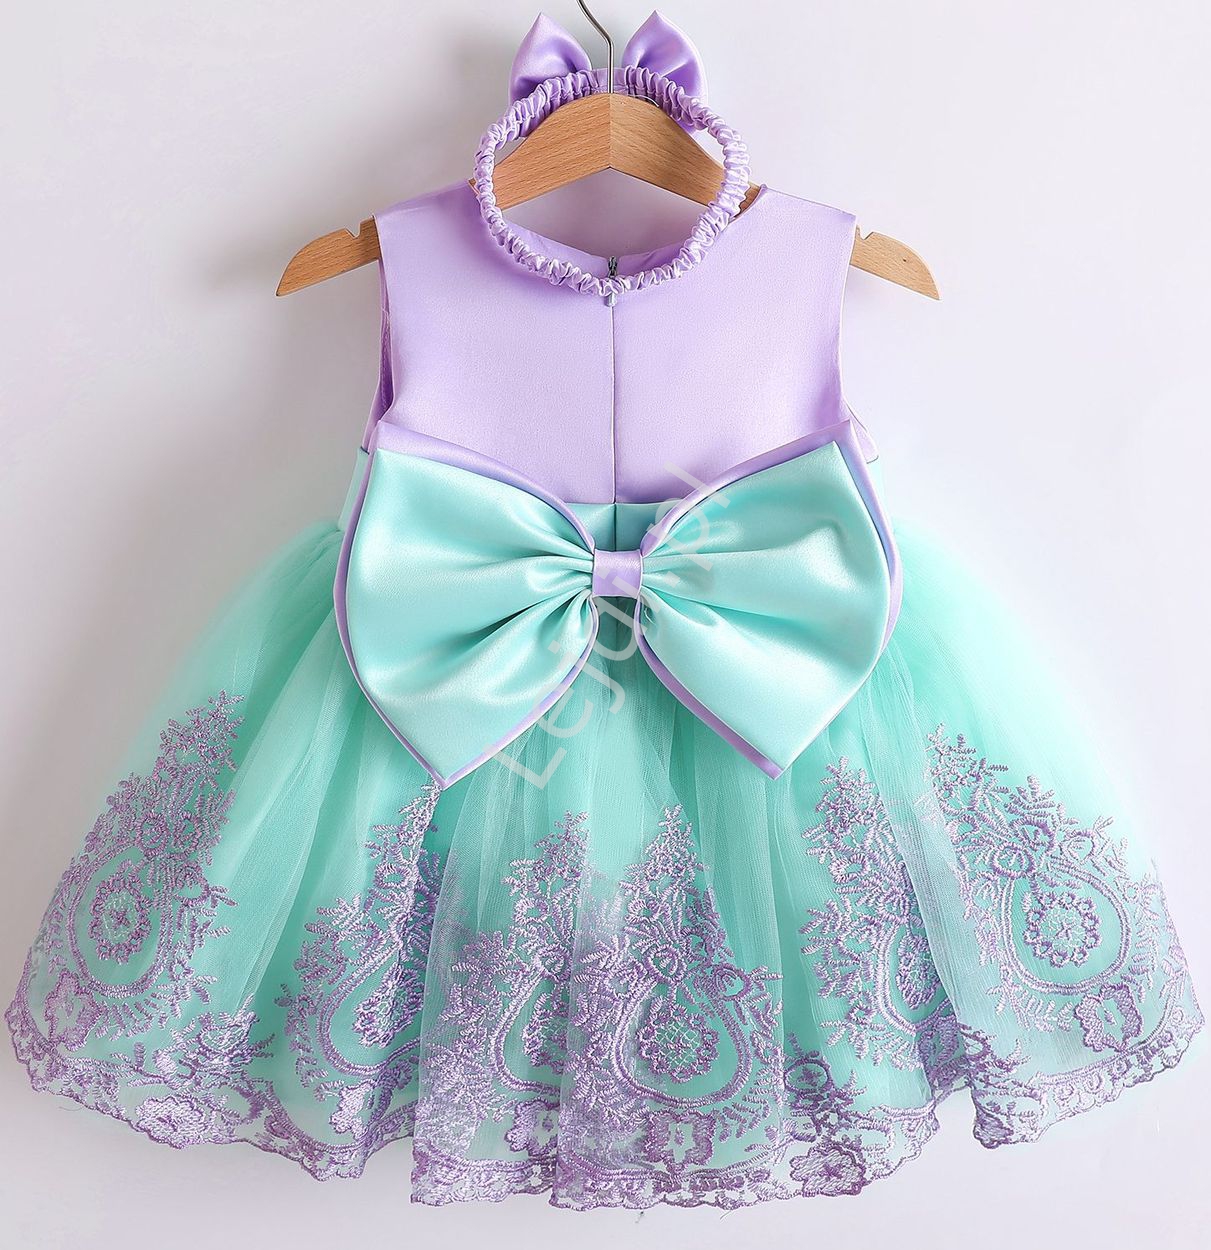  Fioletowo miętowa sukienka dla dziewczynki z opaską w komplecie, elegancki komplet na roczek, na we